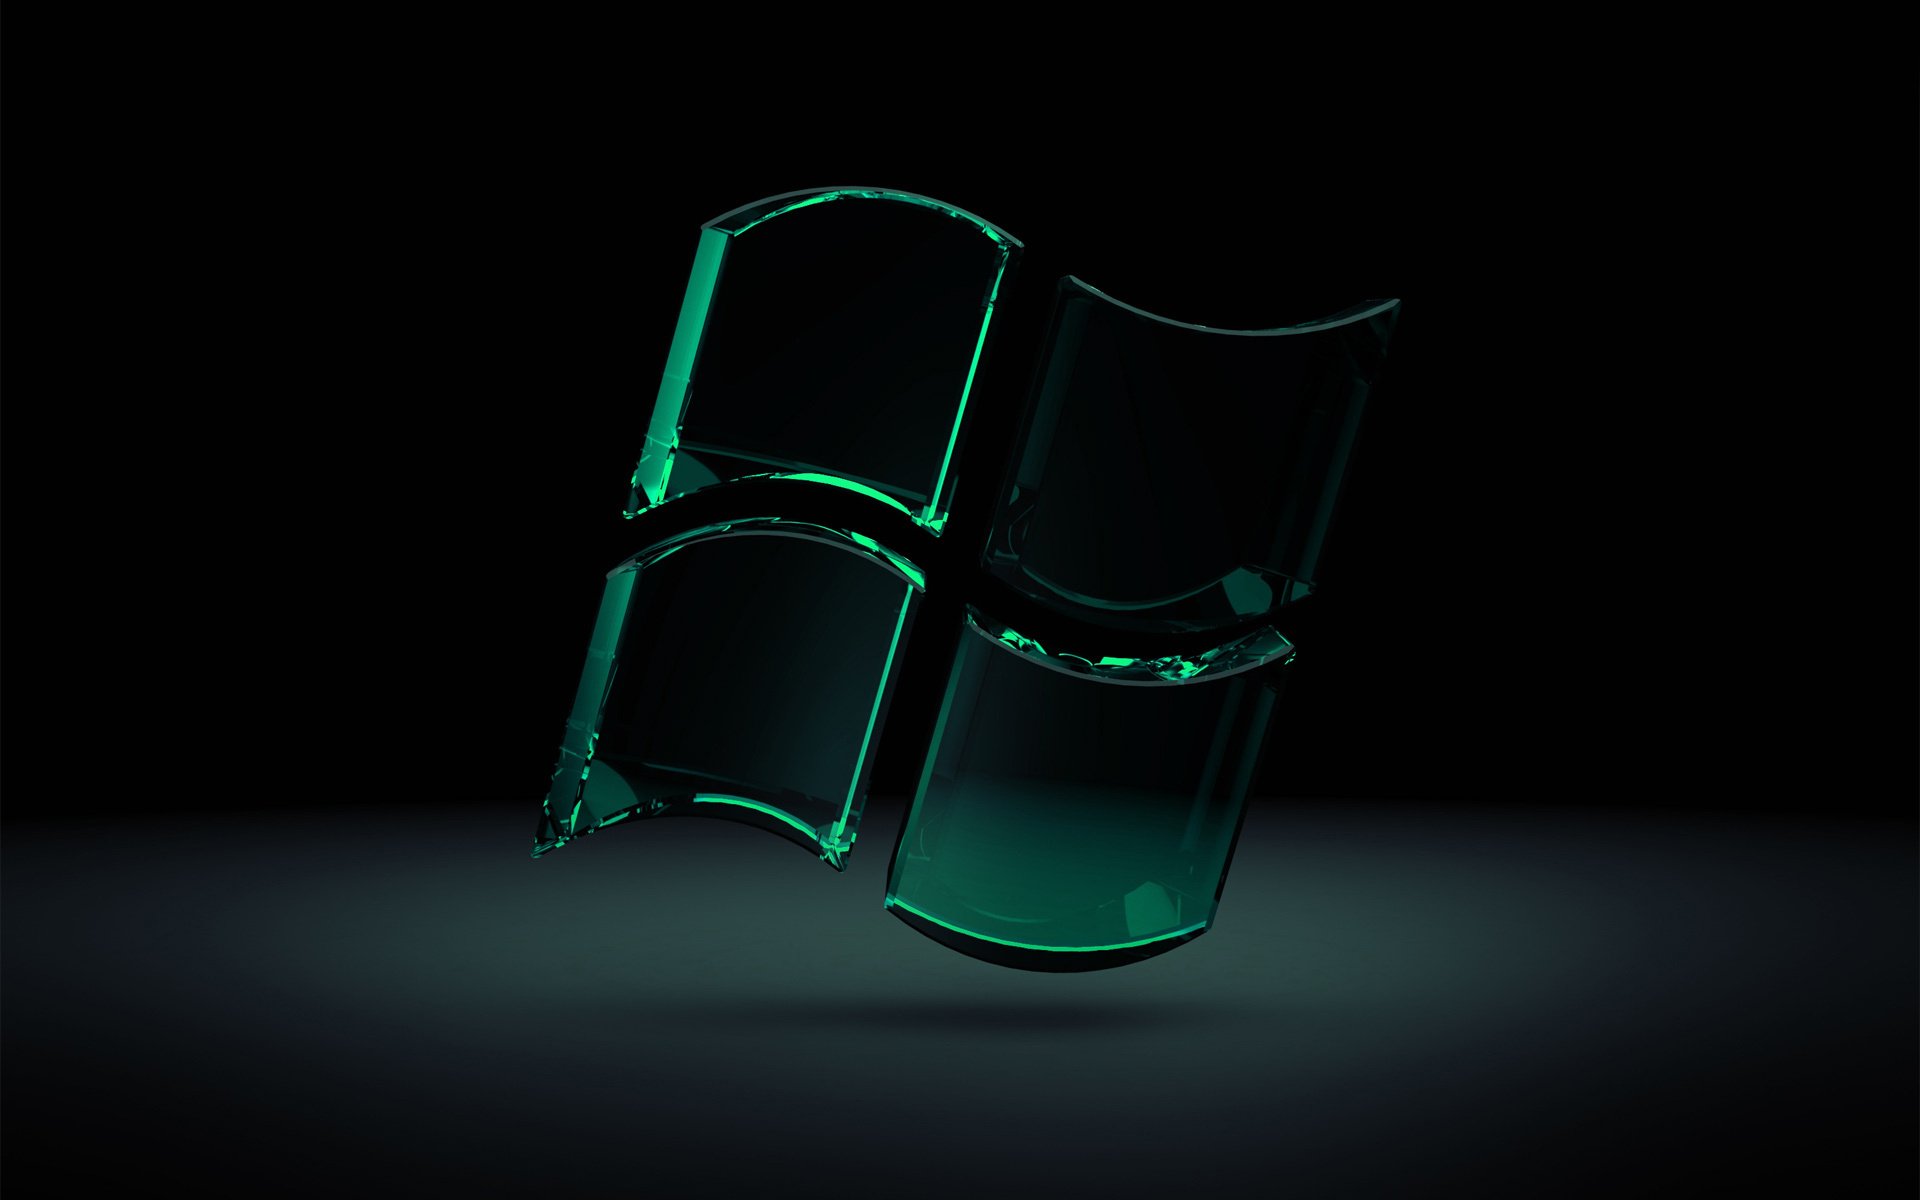 стеклянные витражи значок windows 7 эмблемы логотипы стекло воздух зеленый цвет черный фон тень